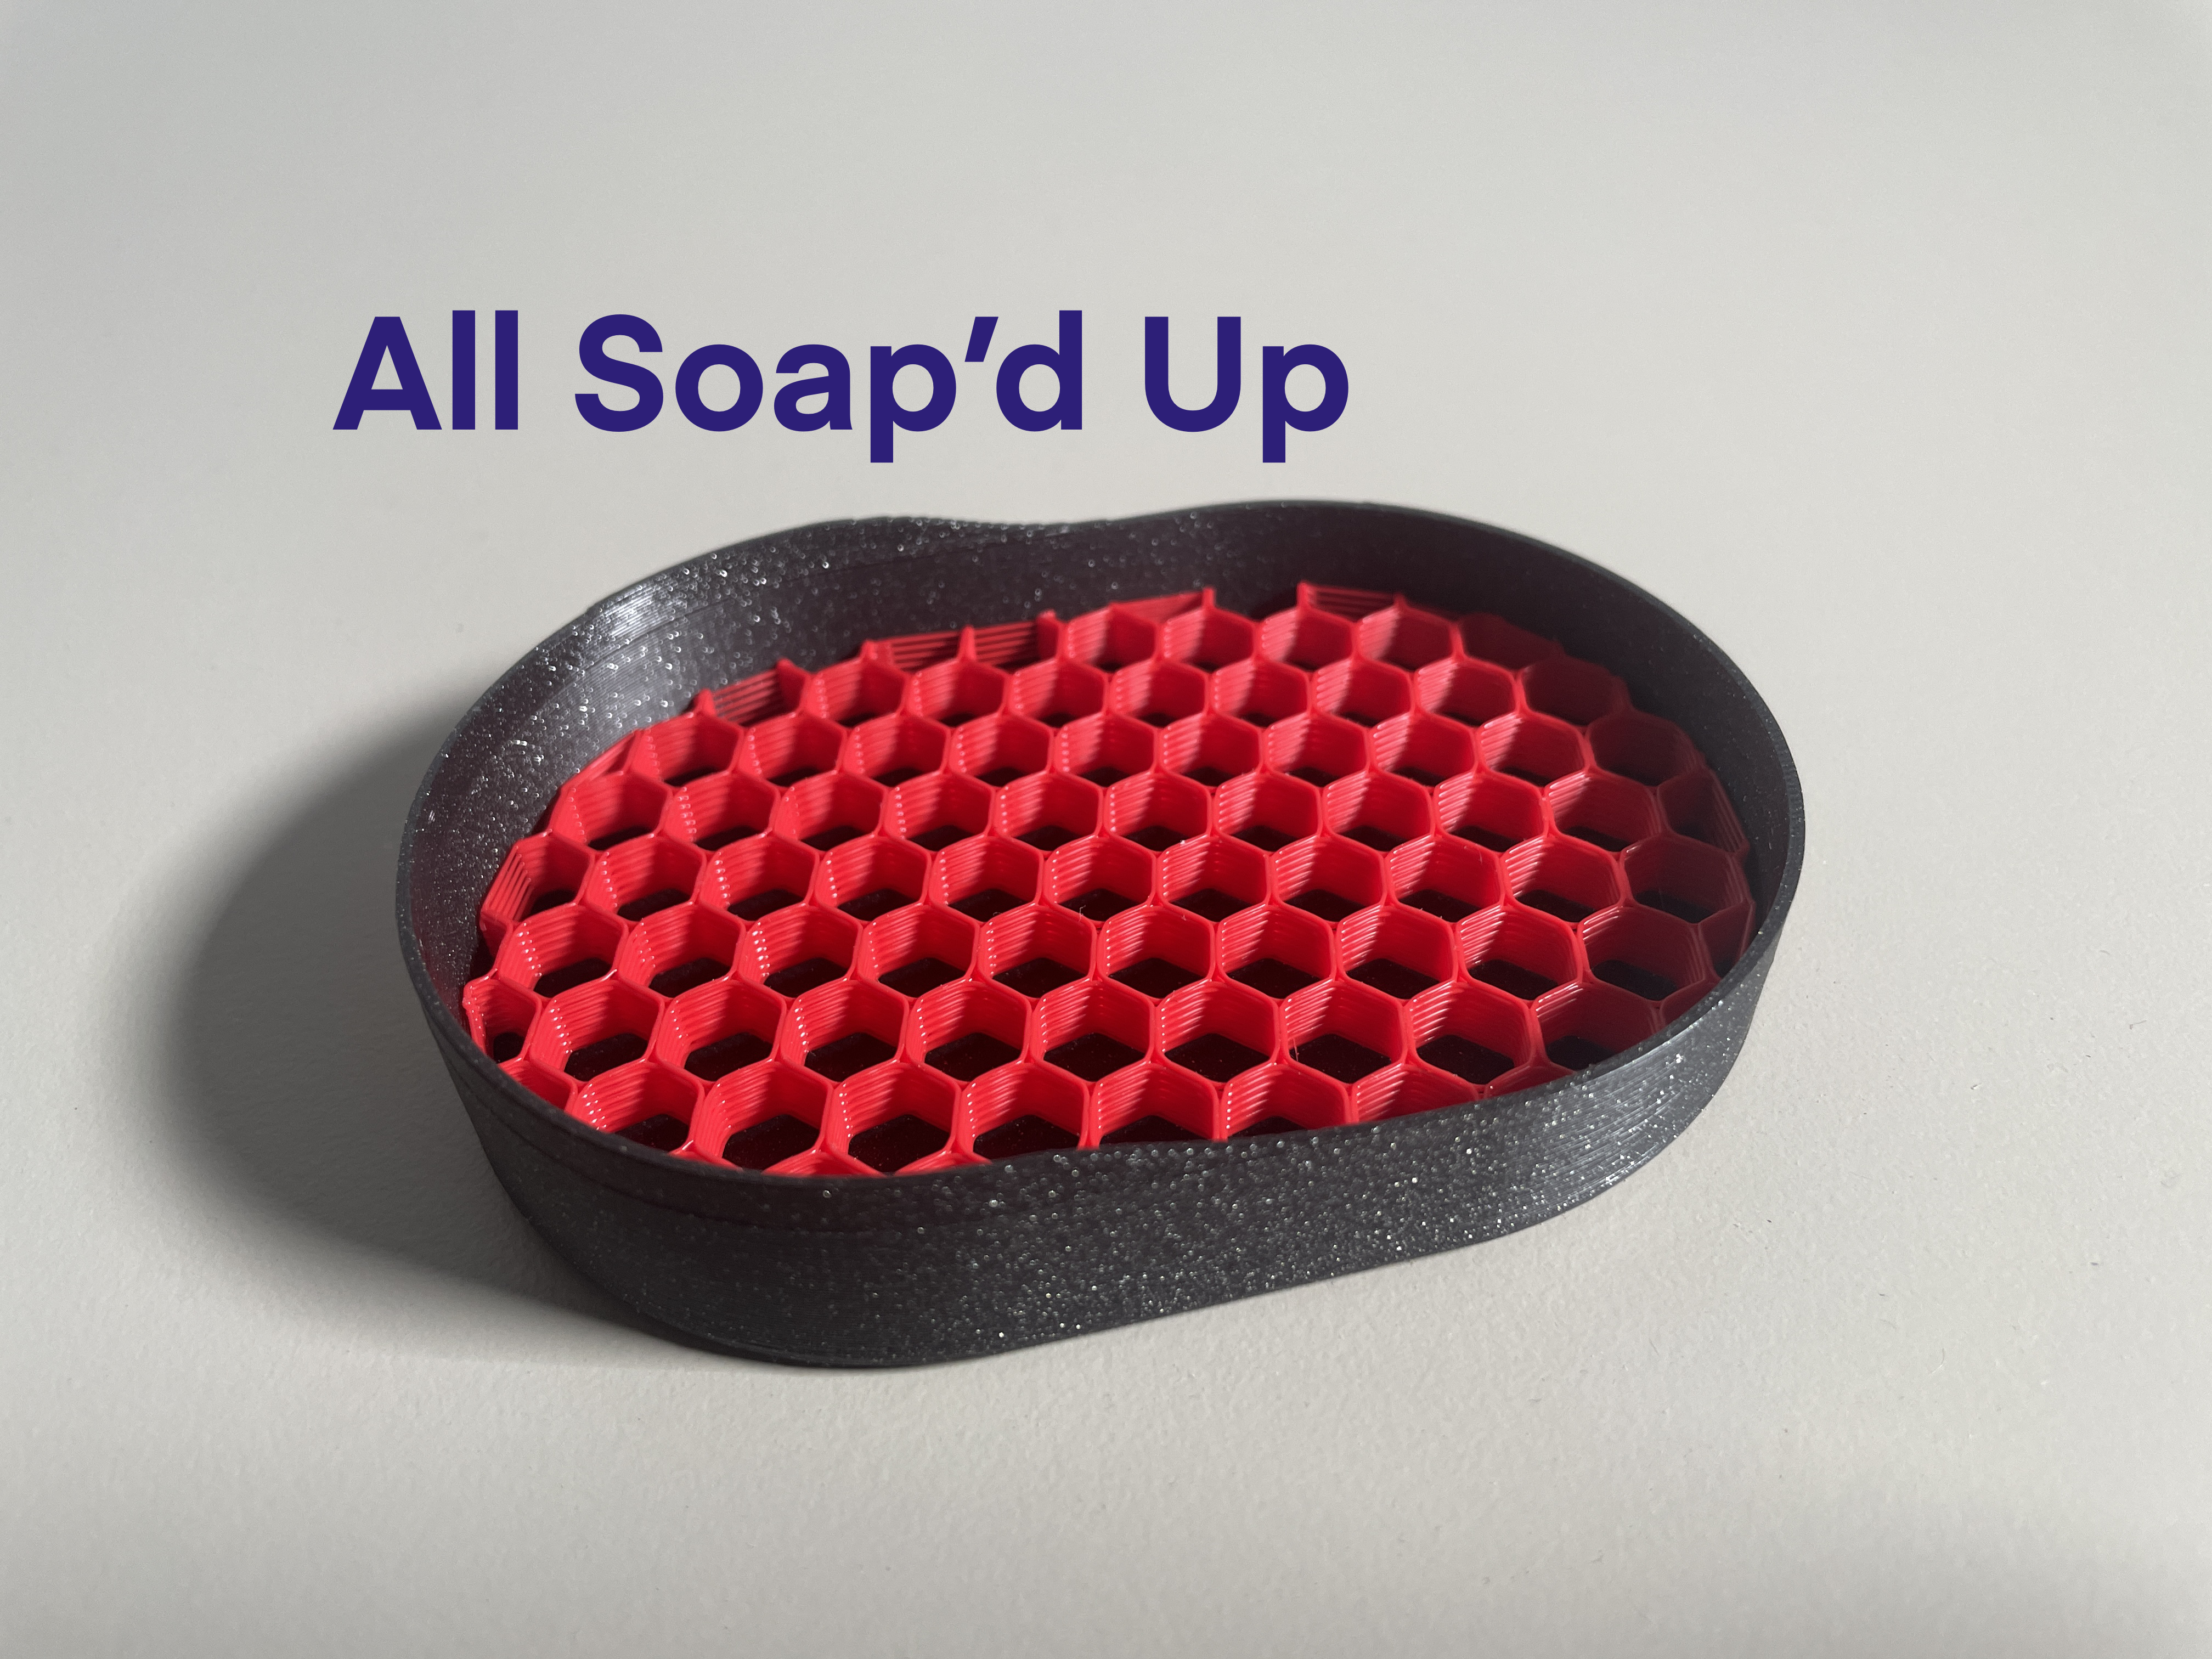 Soap'd Up - Bar Soap Holder